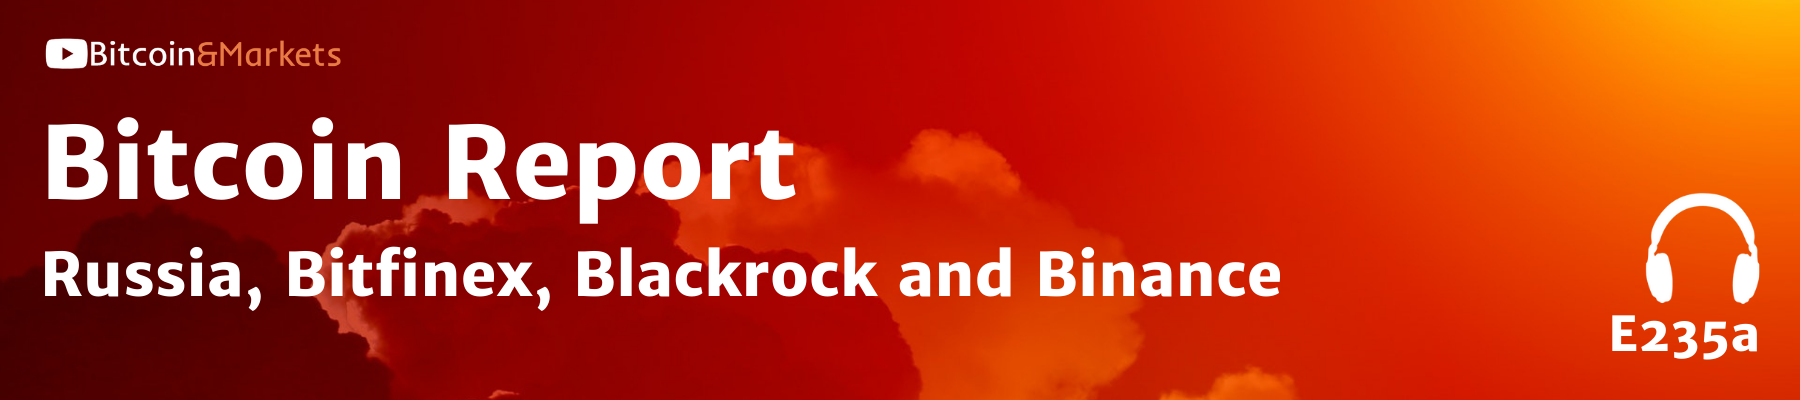 Bitcoin Report: Russia, Bitfinex, Blackrock and Binance - E235a